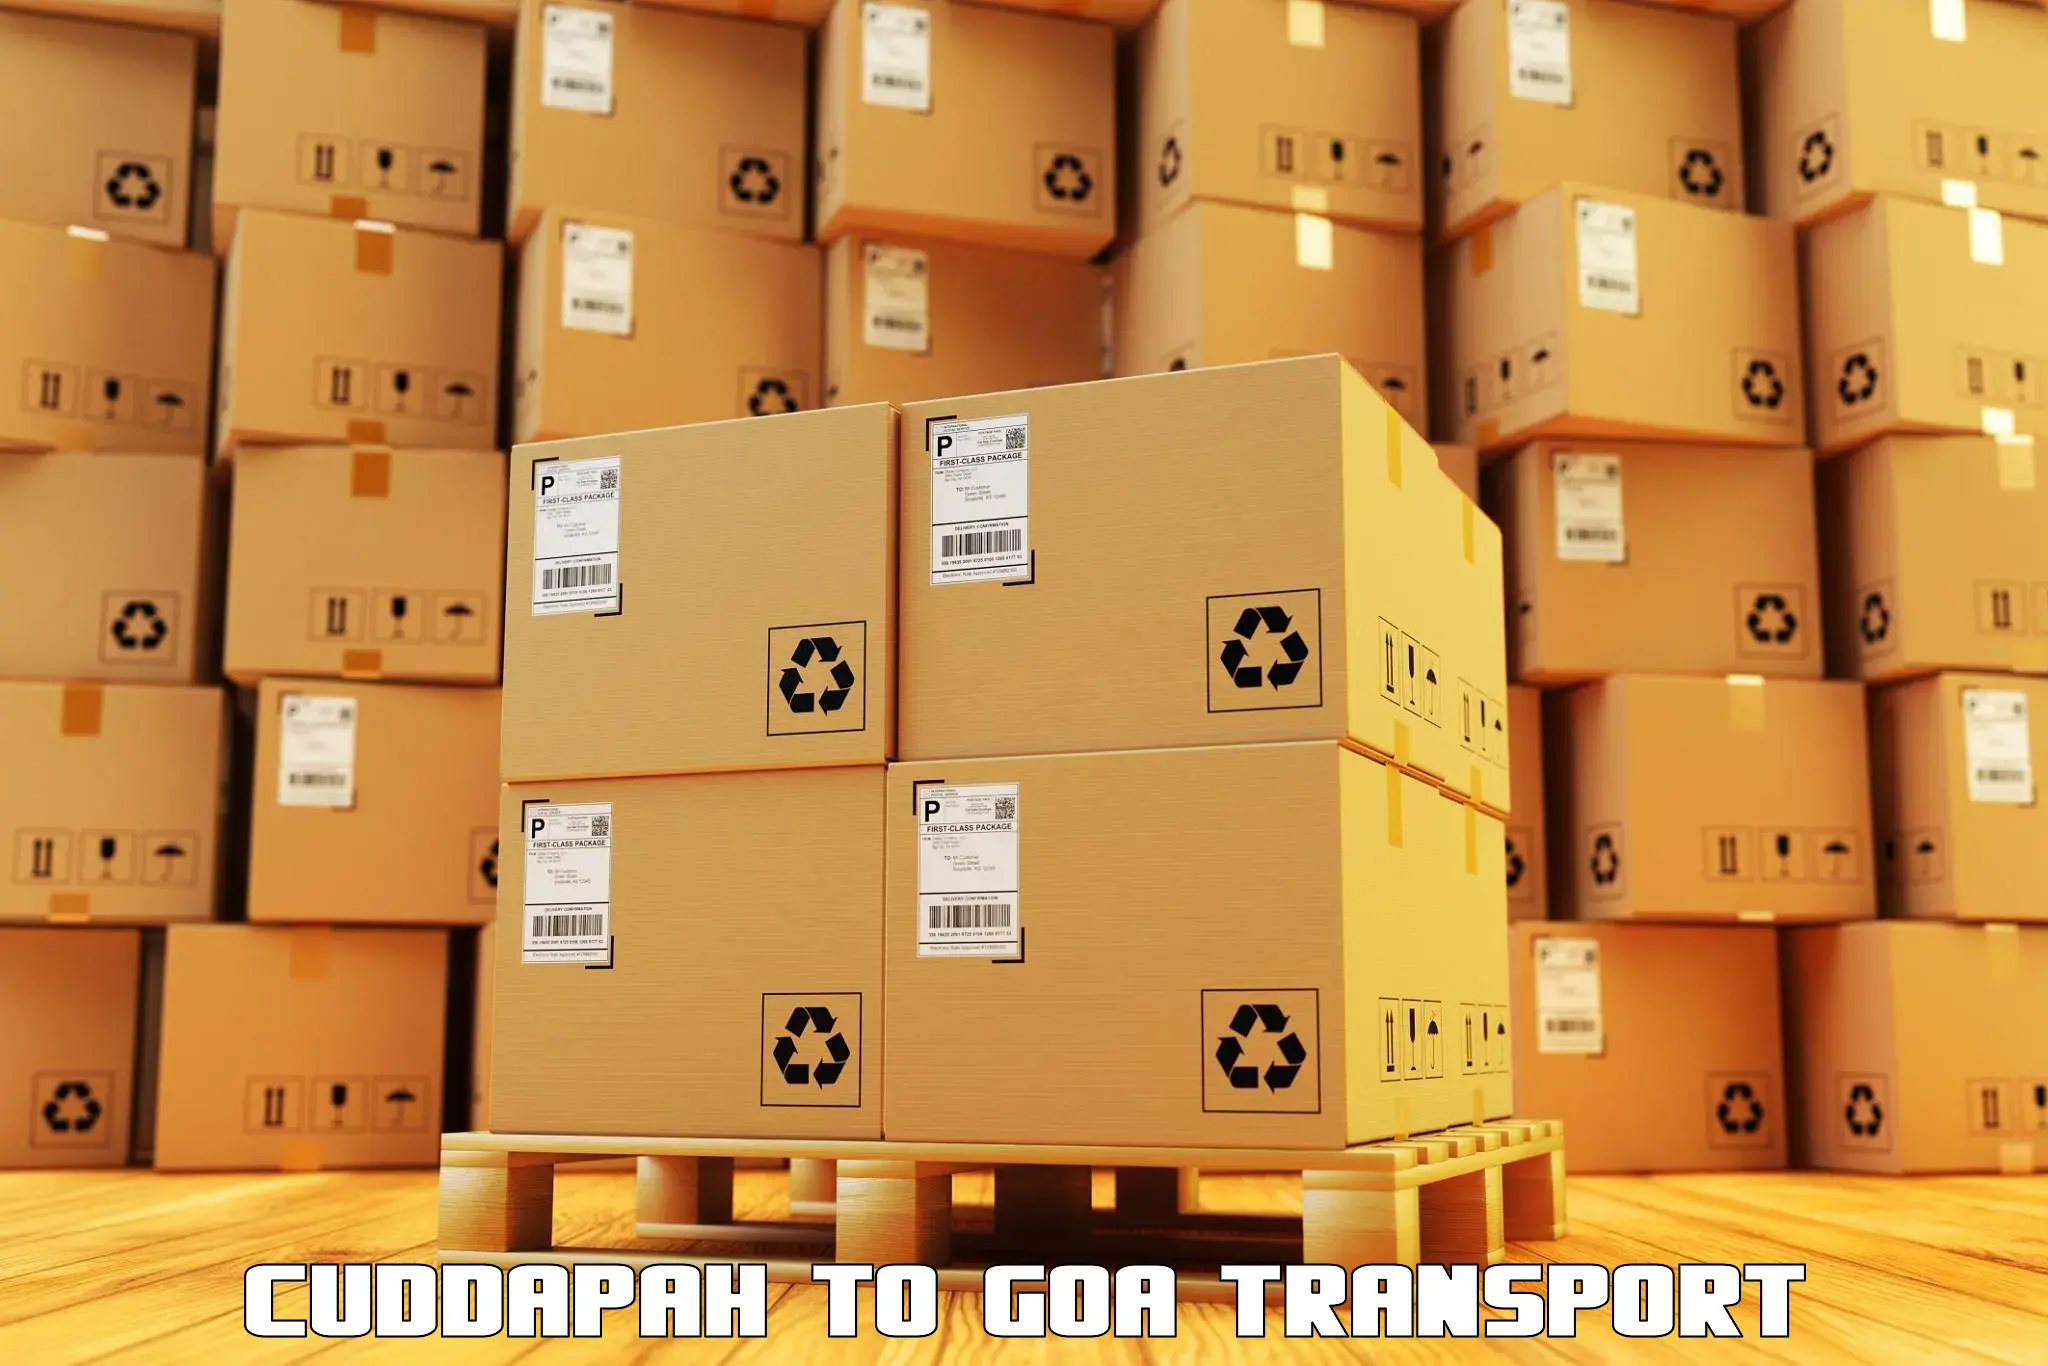 Delivery service Cuddapah to Mormugao Port